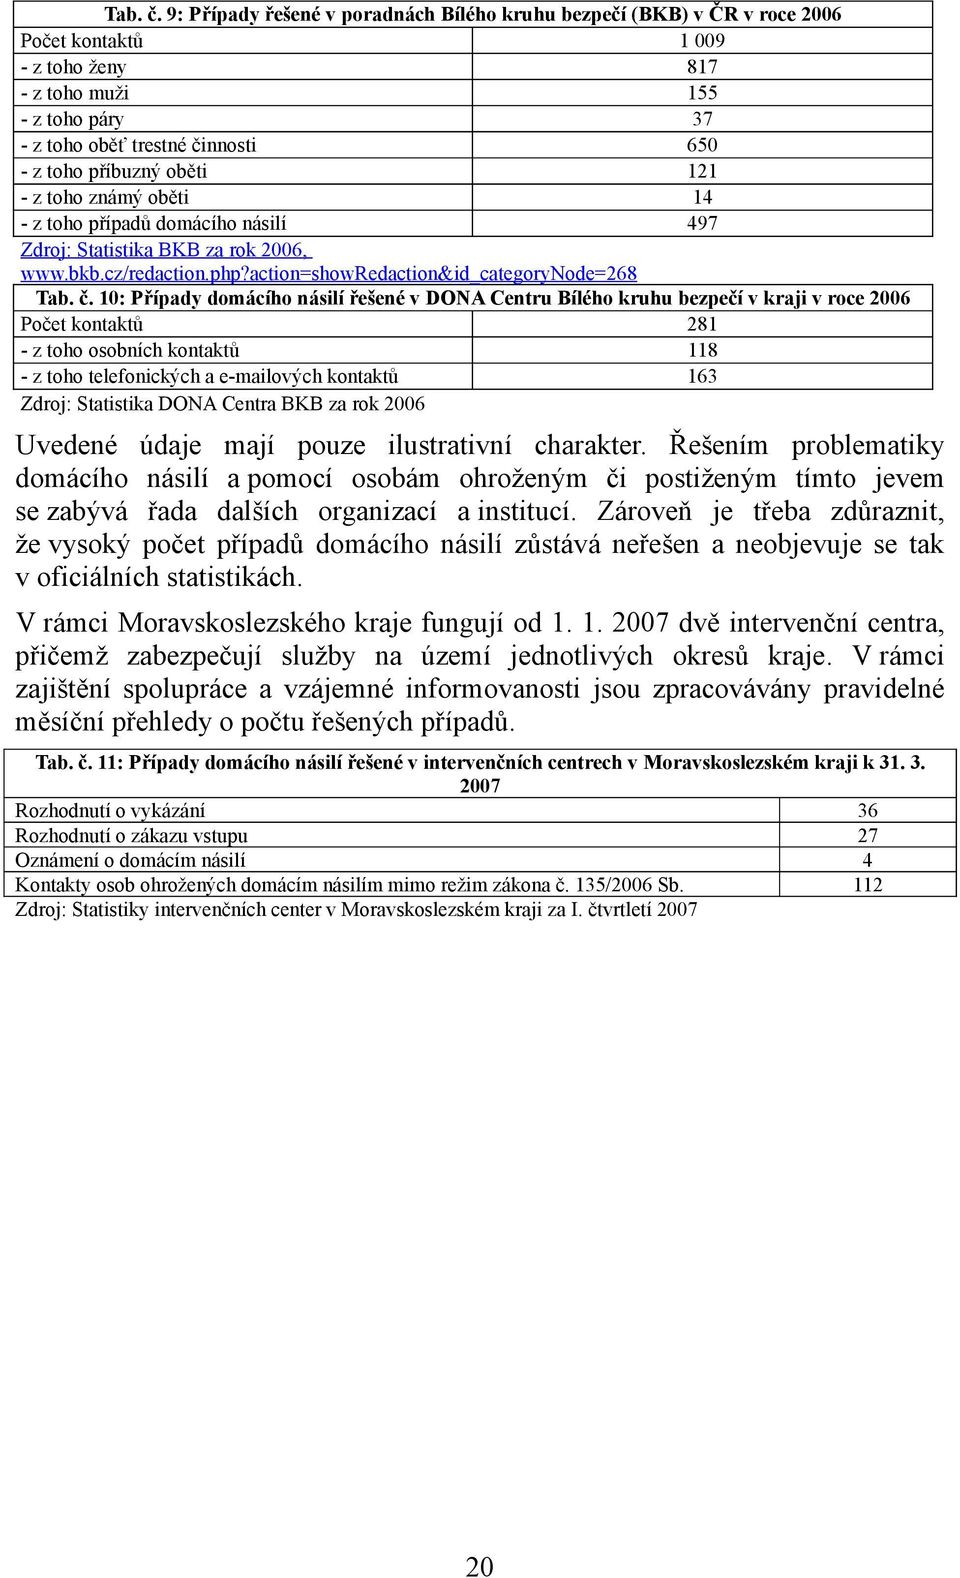 příbuzný oběti 121 - z toho známý oběti 14 - z toho případů domácího násilí 497 Zdroj: Statistika BKB za rok 2006, www.bkb.cz/redaction.php?